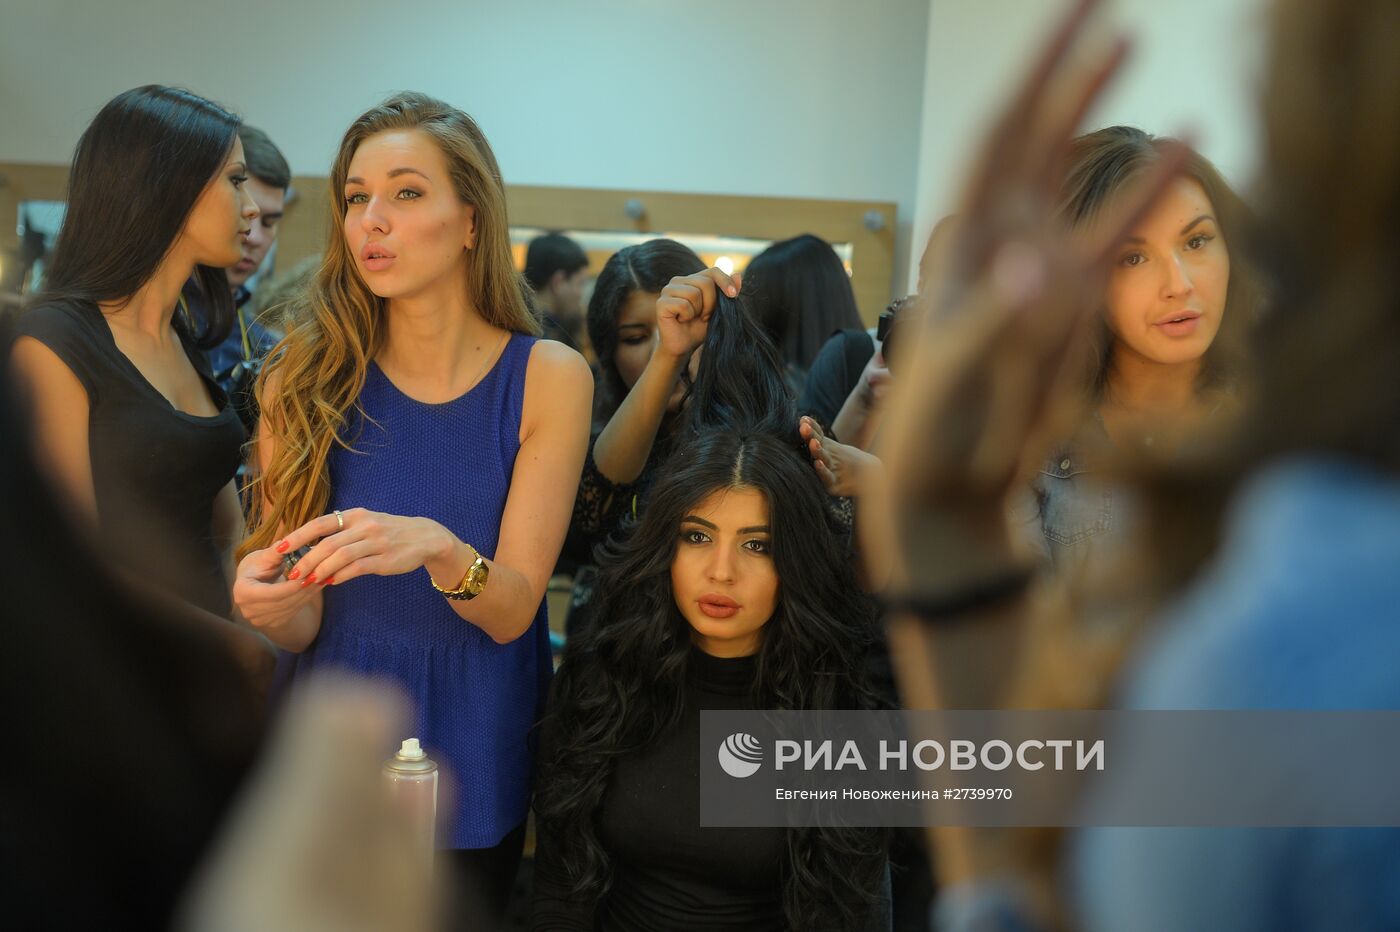 XXI Национальный фестиваль талантов и красоты "Краса России"